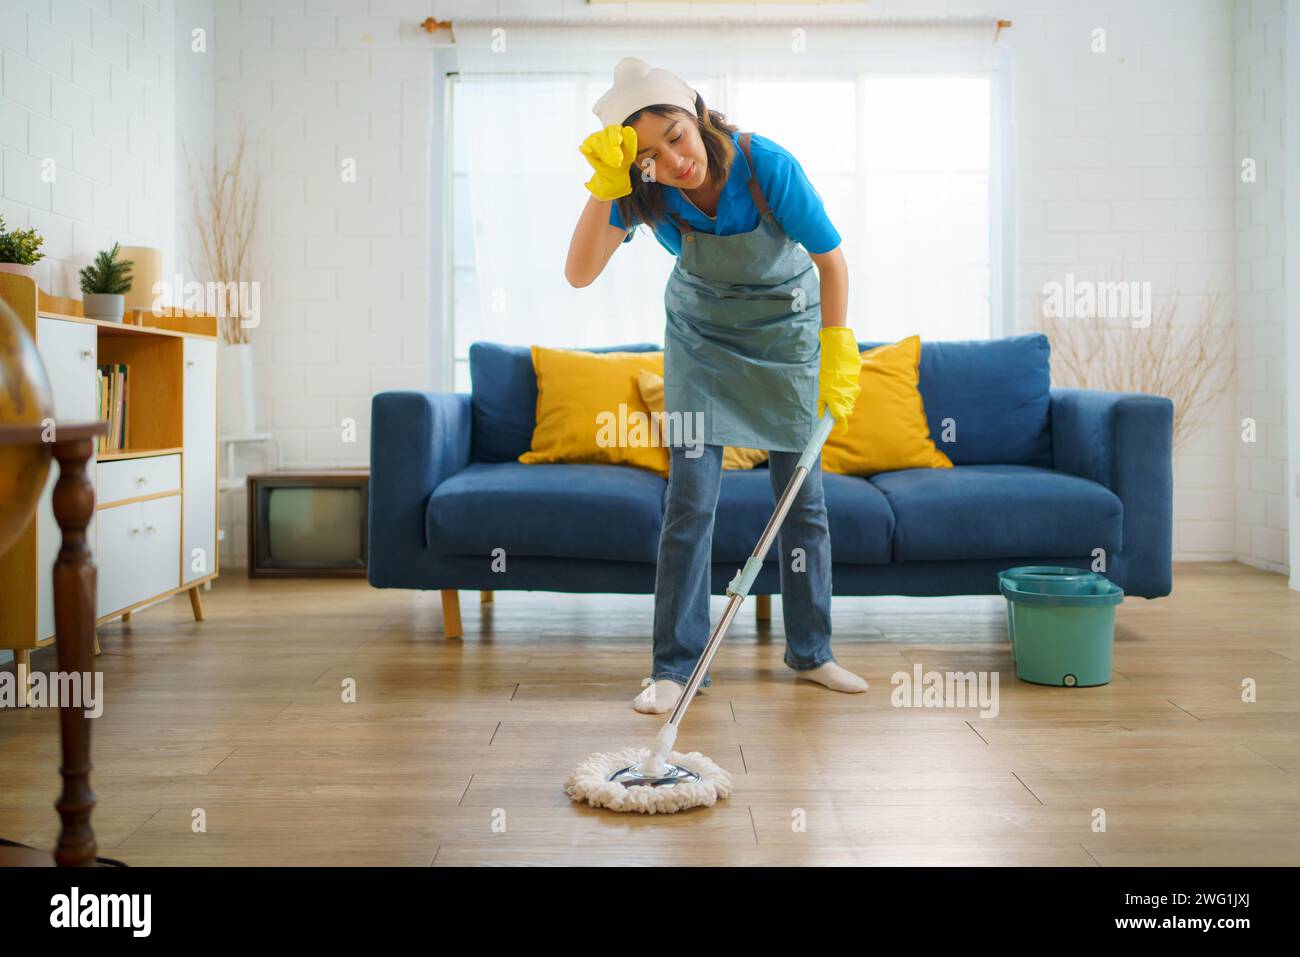 La cameriera mentre puliva il pavimento del soggiorno. Questa immagine riflette il duro lavoro e la dedizione del team delle pulizie, mostrando la c Foto Stock